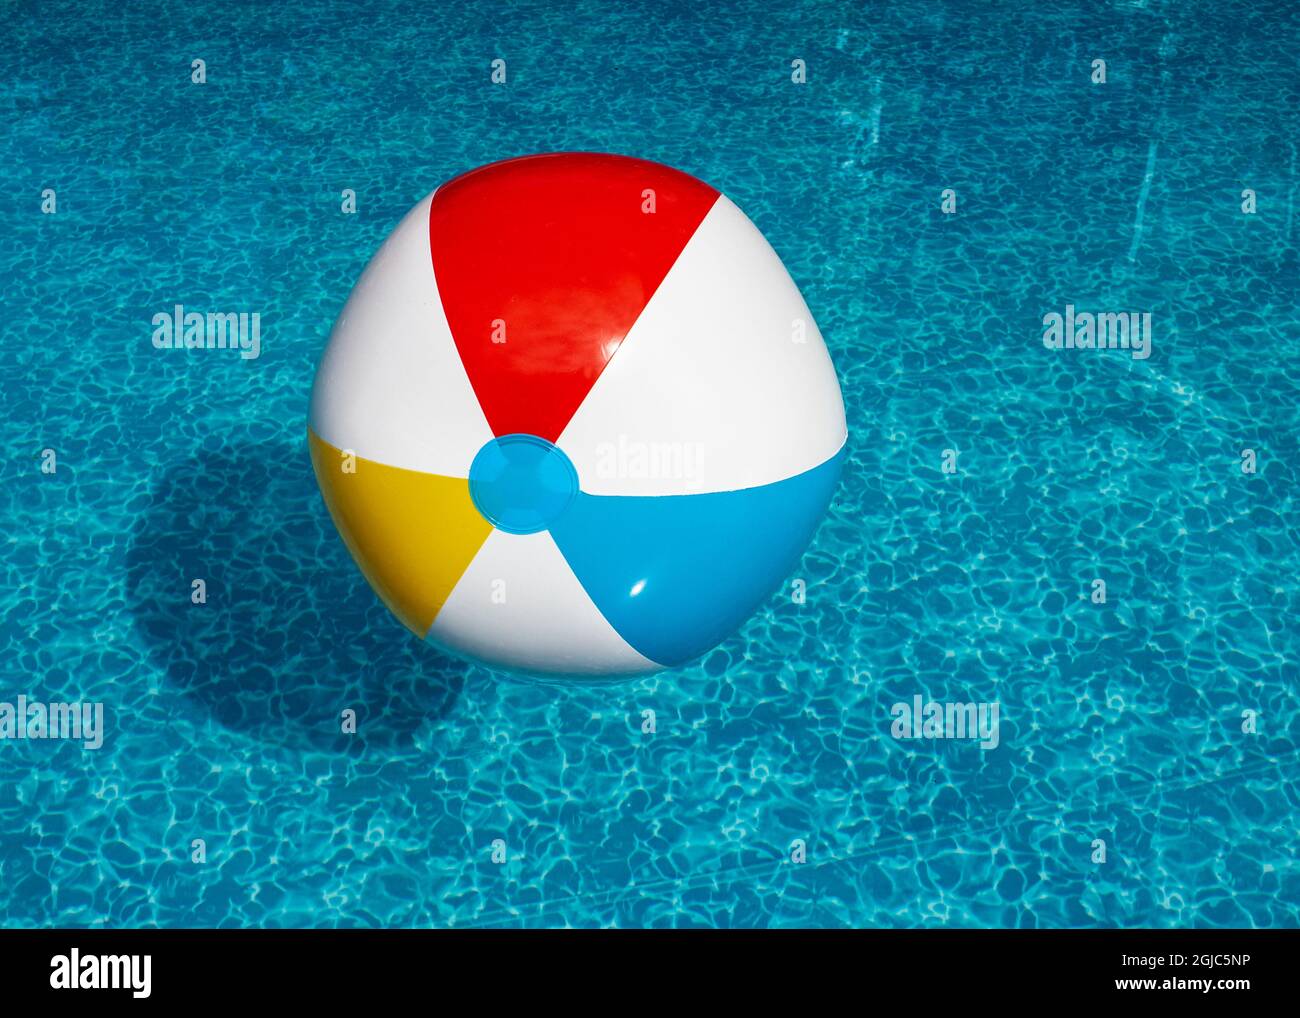 Ballon de plage gonflable flottant dans la piscine Banque D'Images